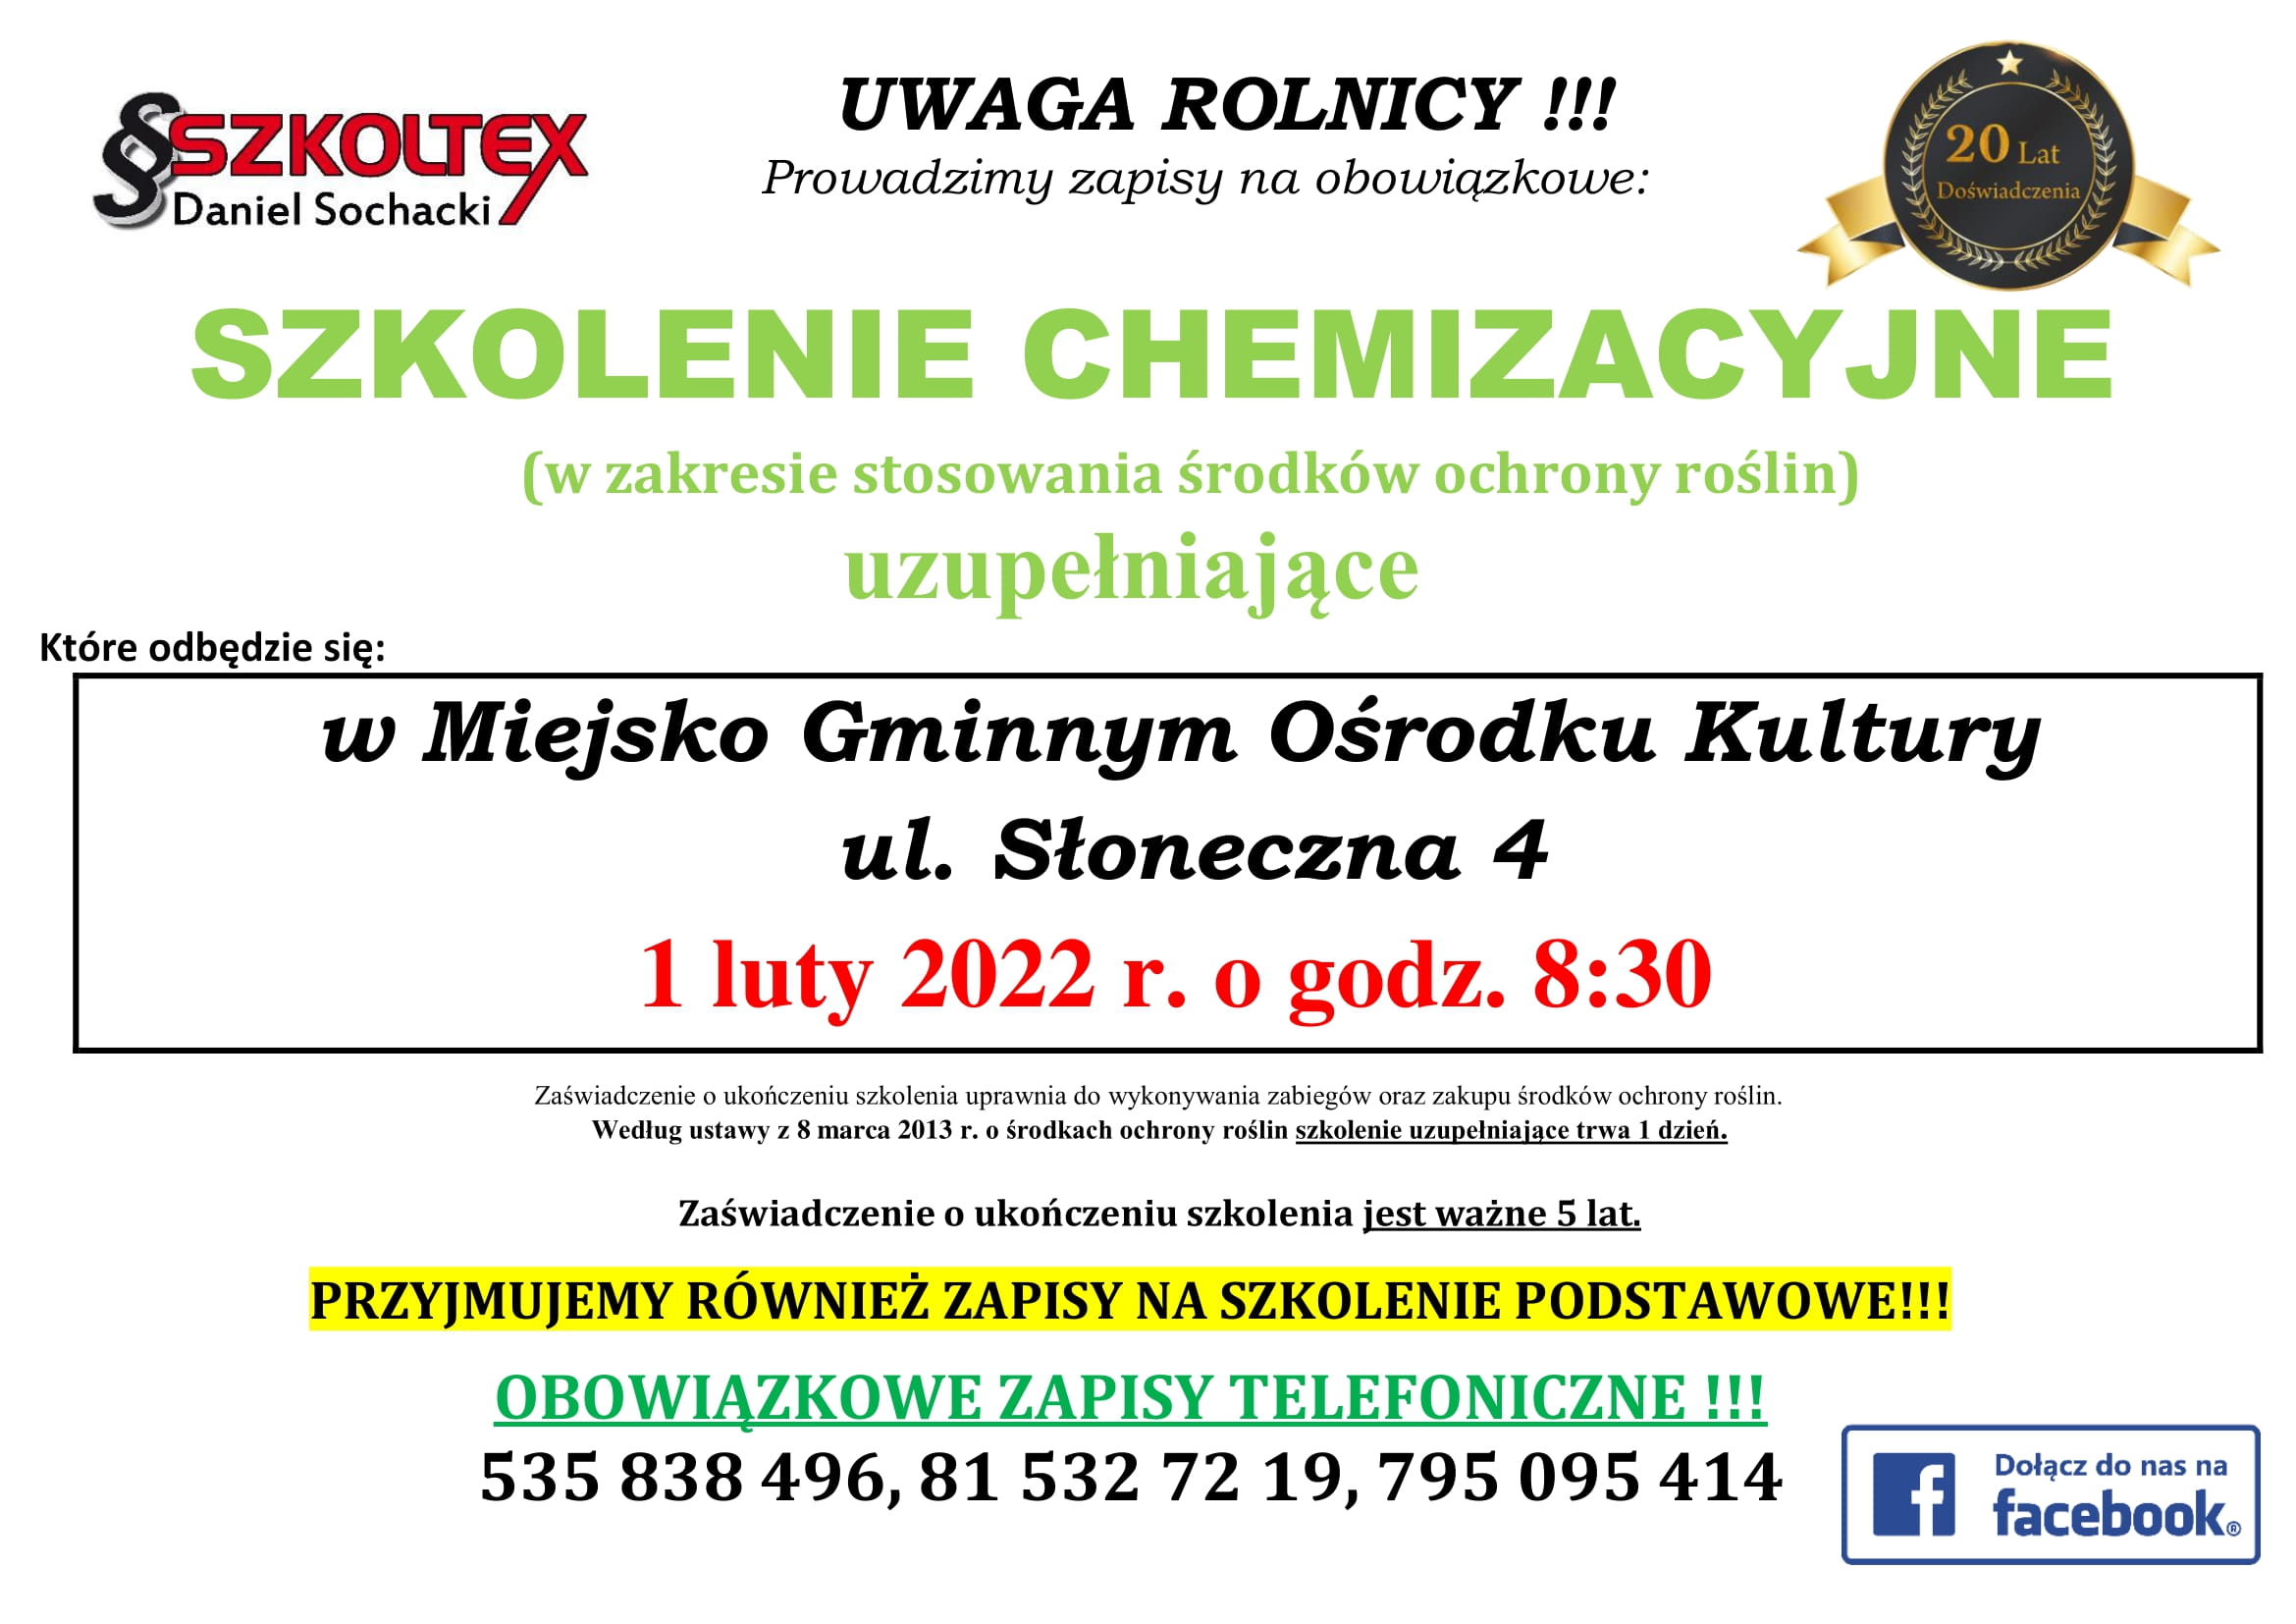 Szkolenie chemizacyjne szkoltex 2022 - luty - plakat